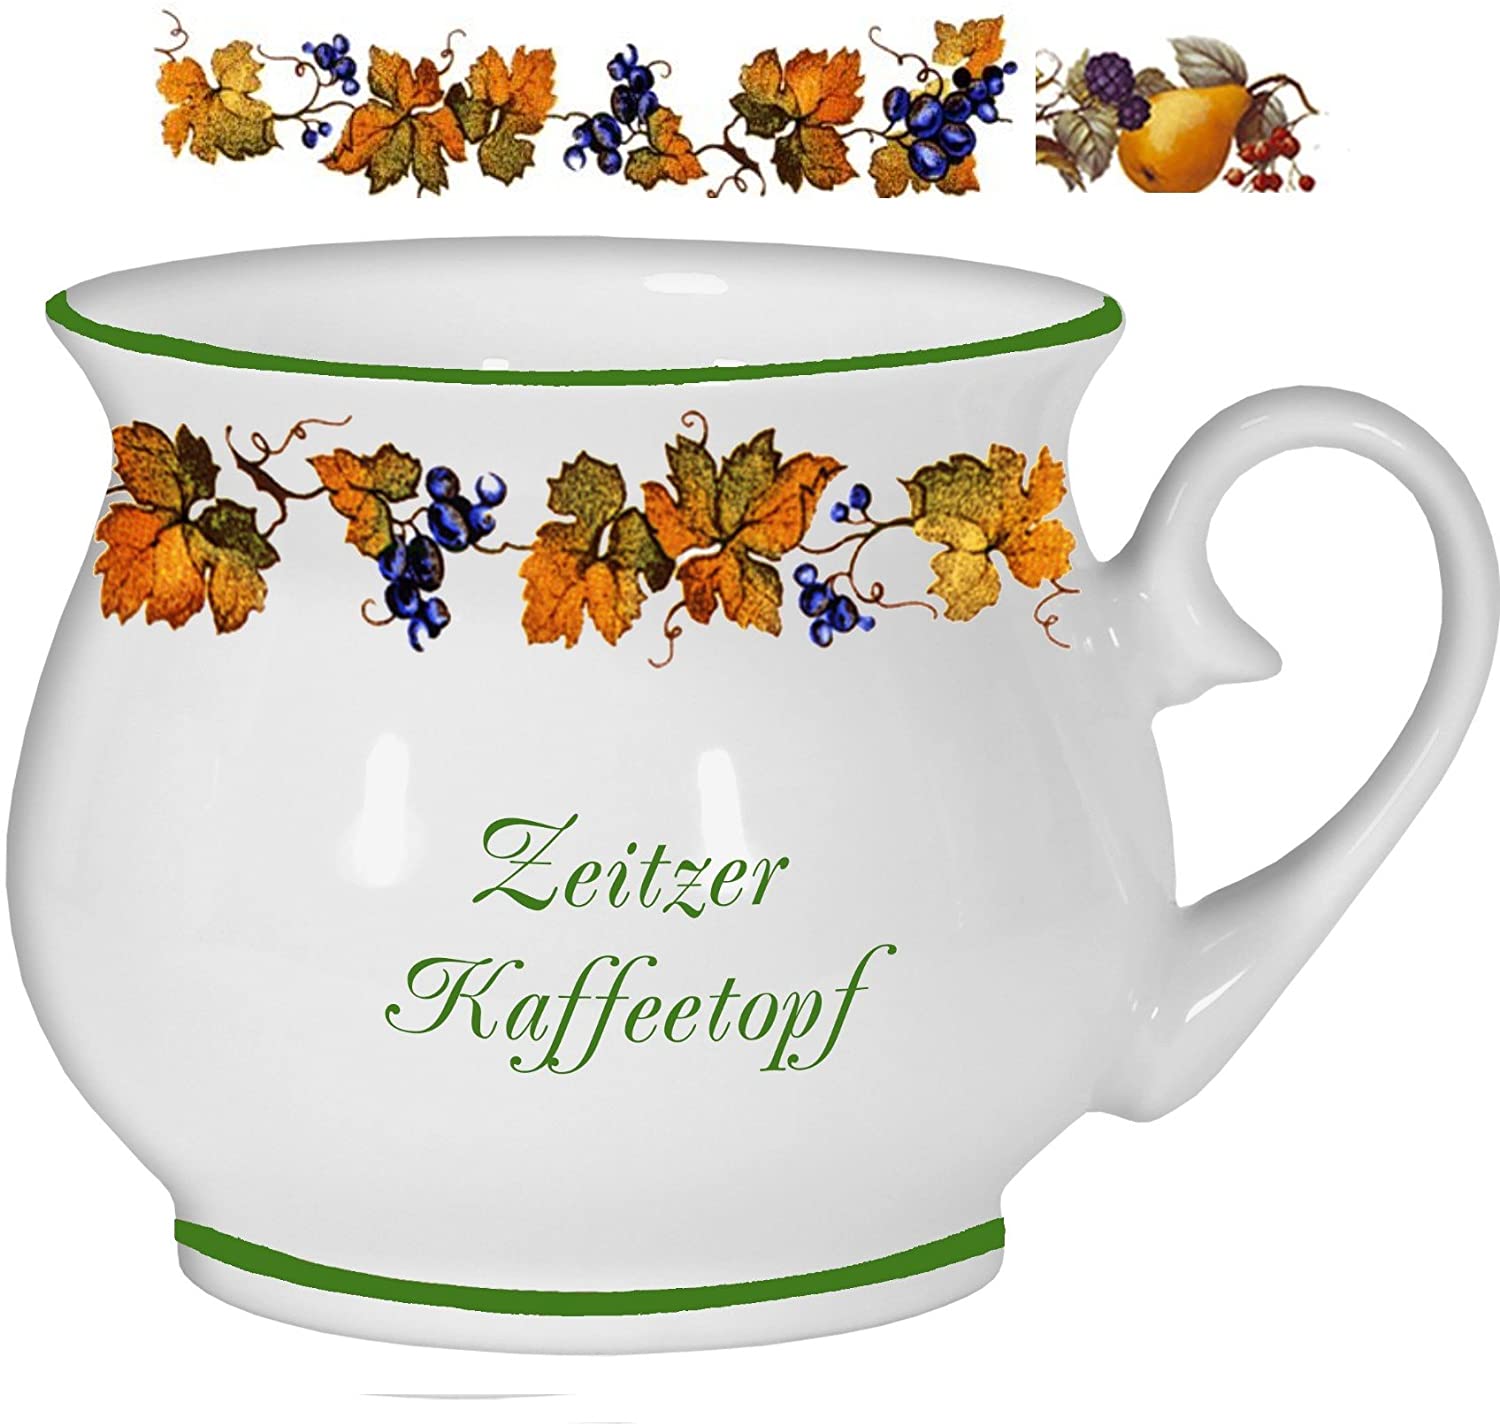 Porzellan- Tasse, Kaffeepott, Kugelbecher - Zeitz - Traubenranke - deutsches Produktdesign